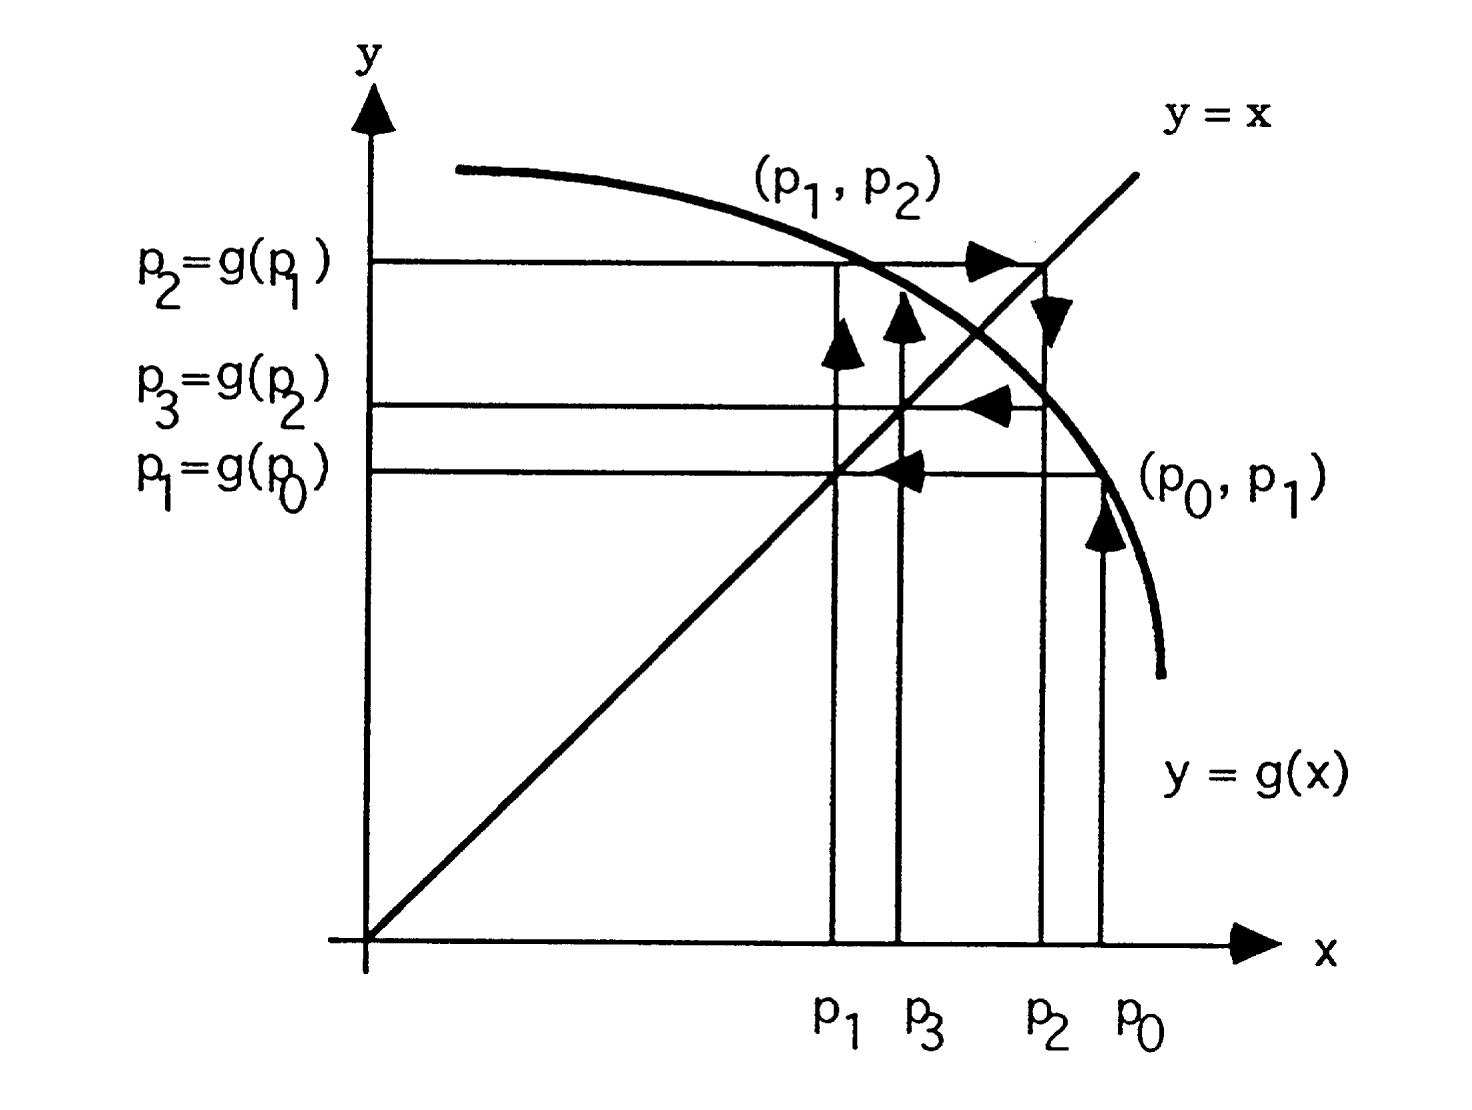 No obstante, si consideramos el caso en que g (x) > 1, entonces el proceso de iteración puede ser divergente.